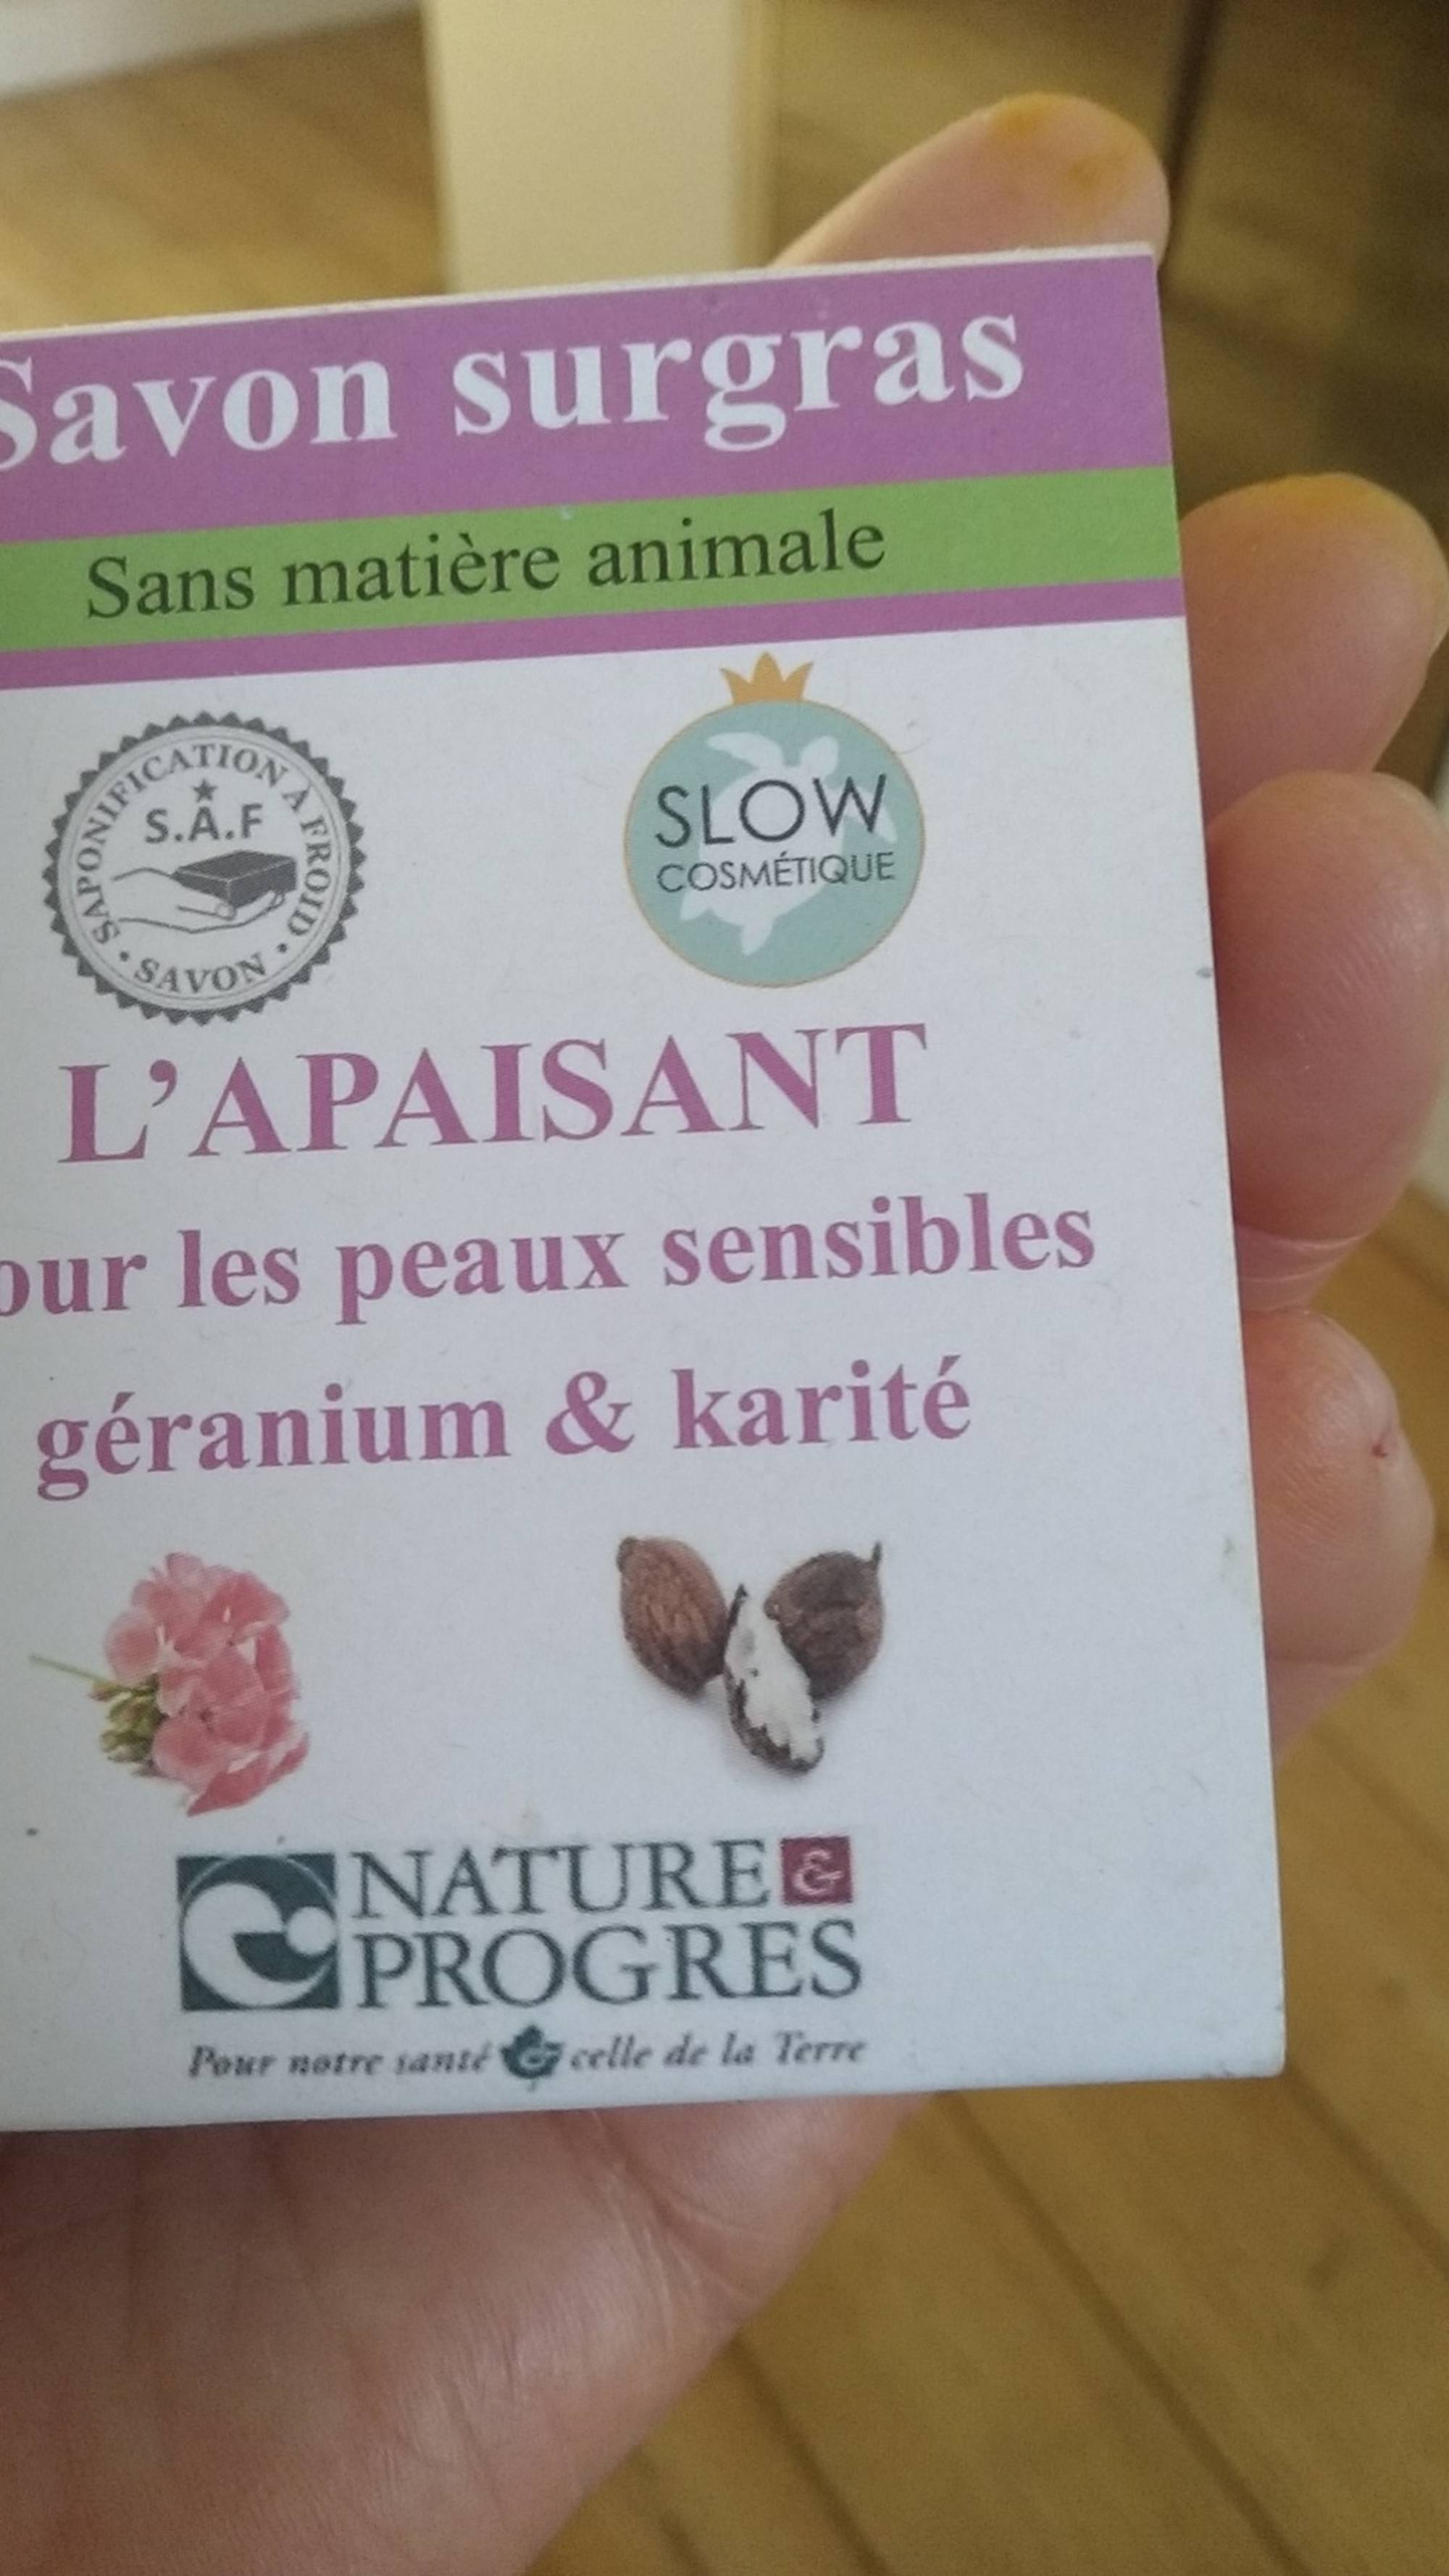 NATURE & PROGRÈS - Géranium & Karité - Savon surgras